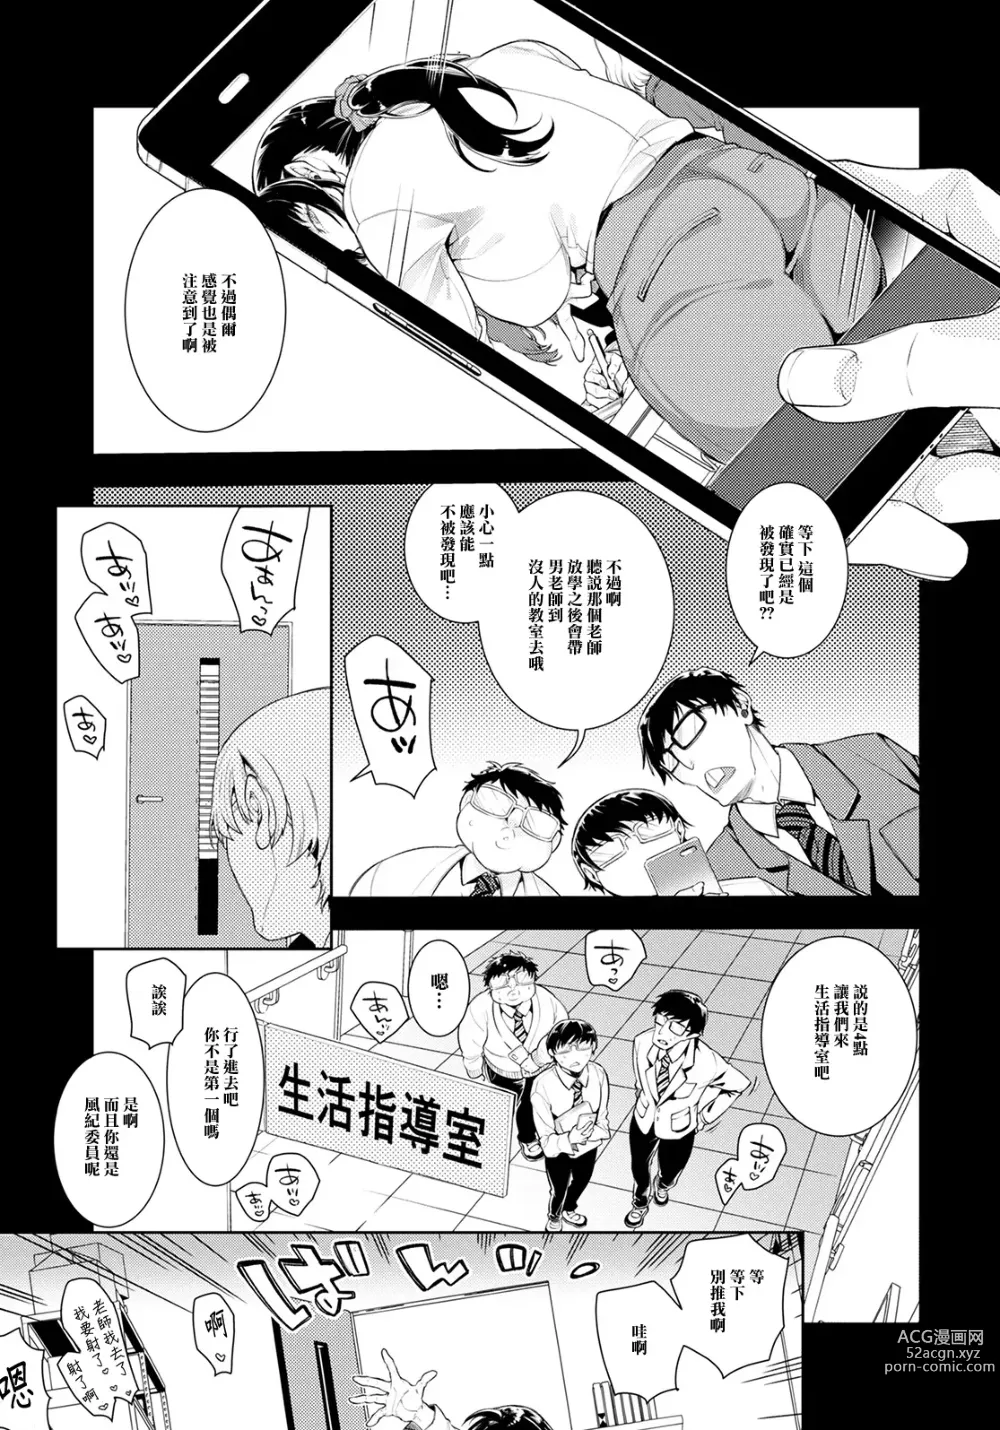 Page 5 of manga Jokyoushi Himitsu no Seikatsu Shidou